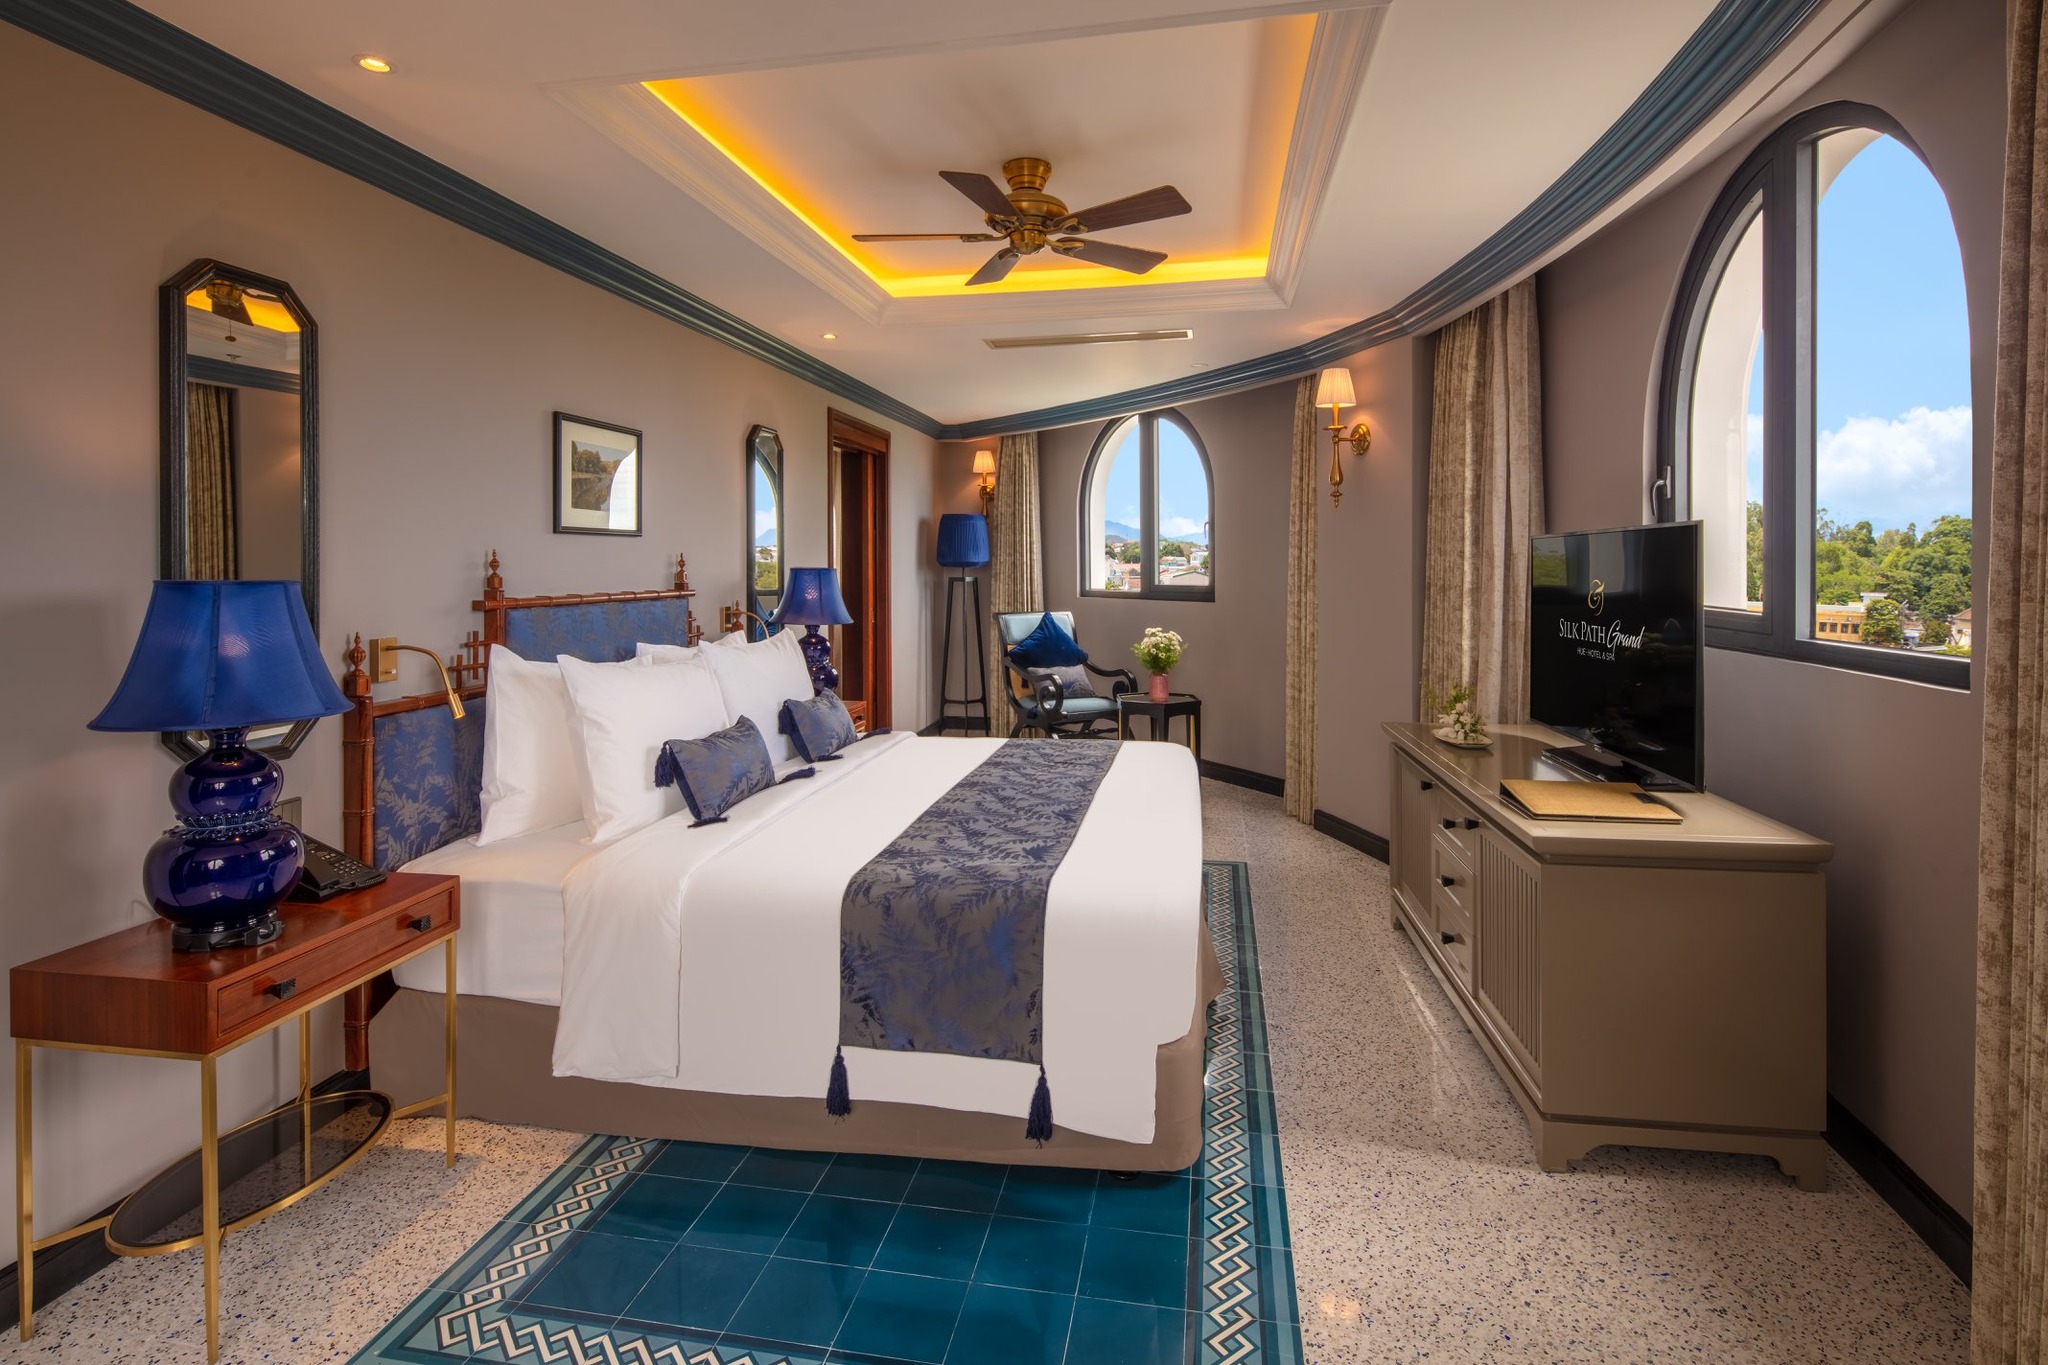 Silk Path Grand Hue Hotel & Spa – Khu nghỉ dưỡng cao cấp “vượt thời gian” giữa đất cố đô 142